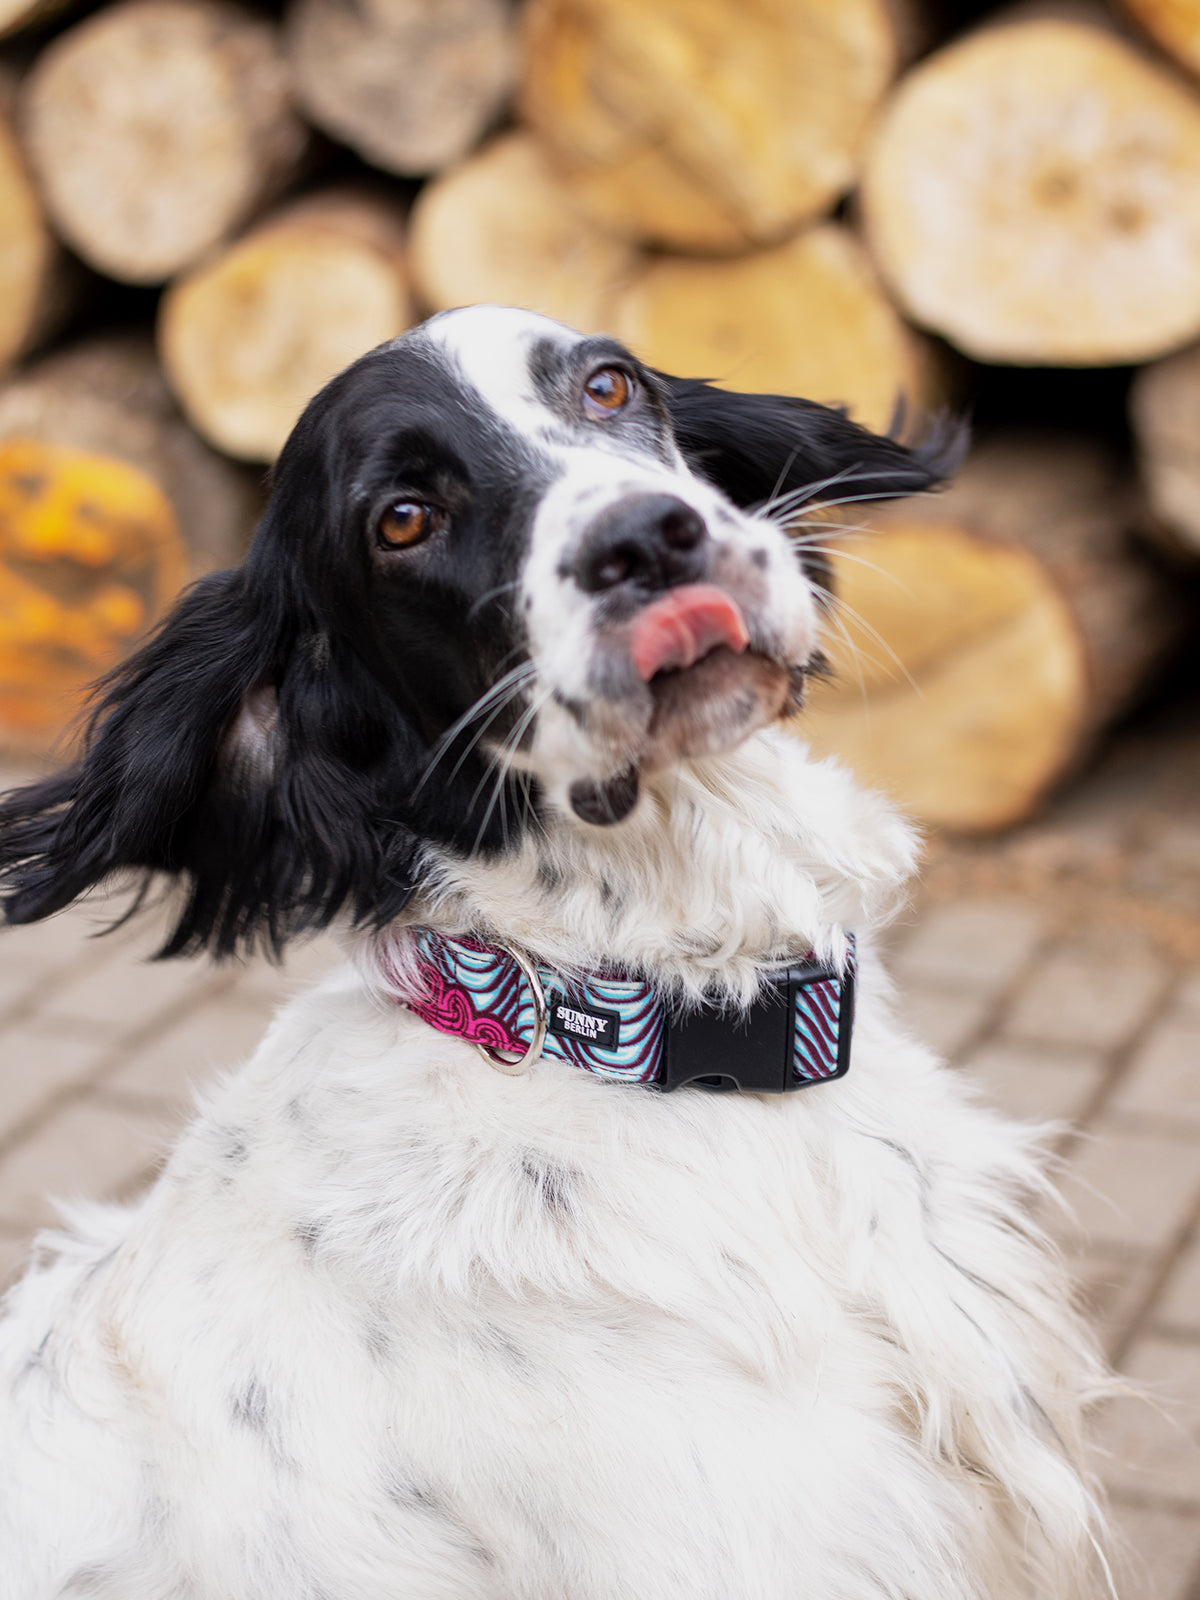 Schwarz-weißer Hund mit rausgestreckter Zunge und einem bunten Hundehalsband